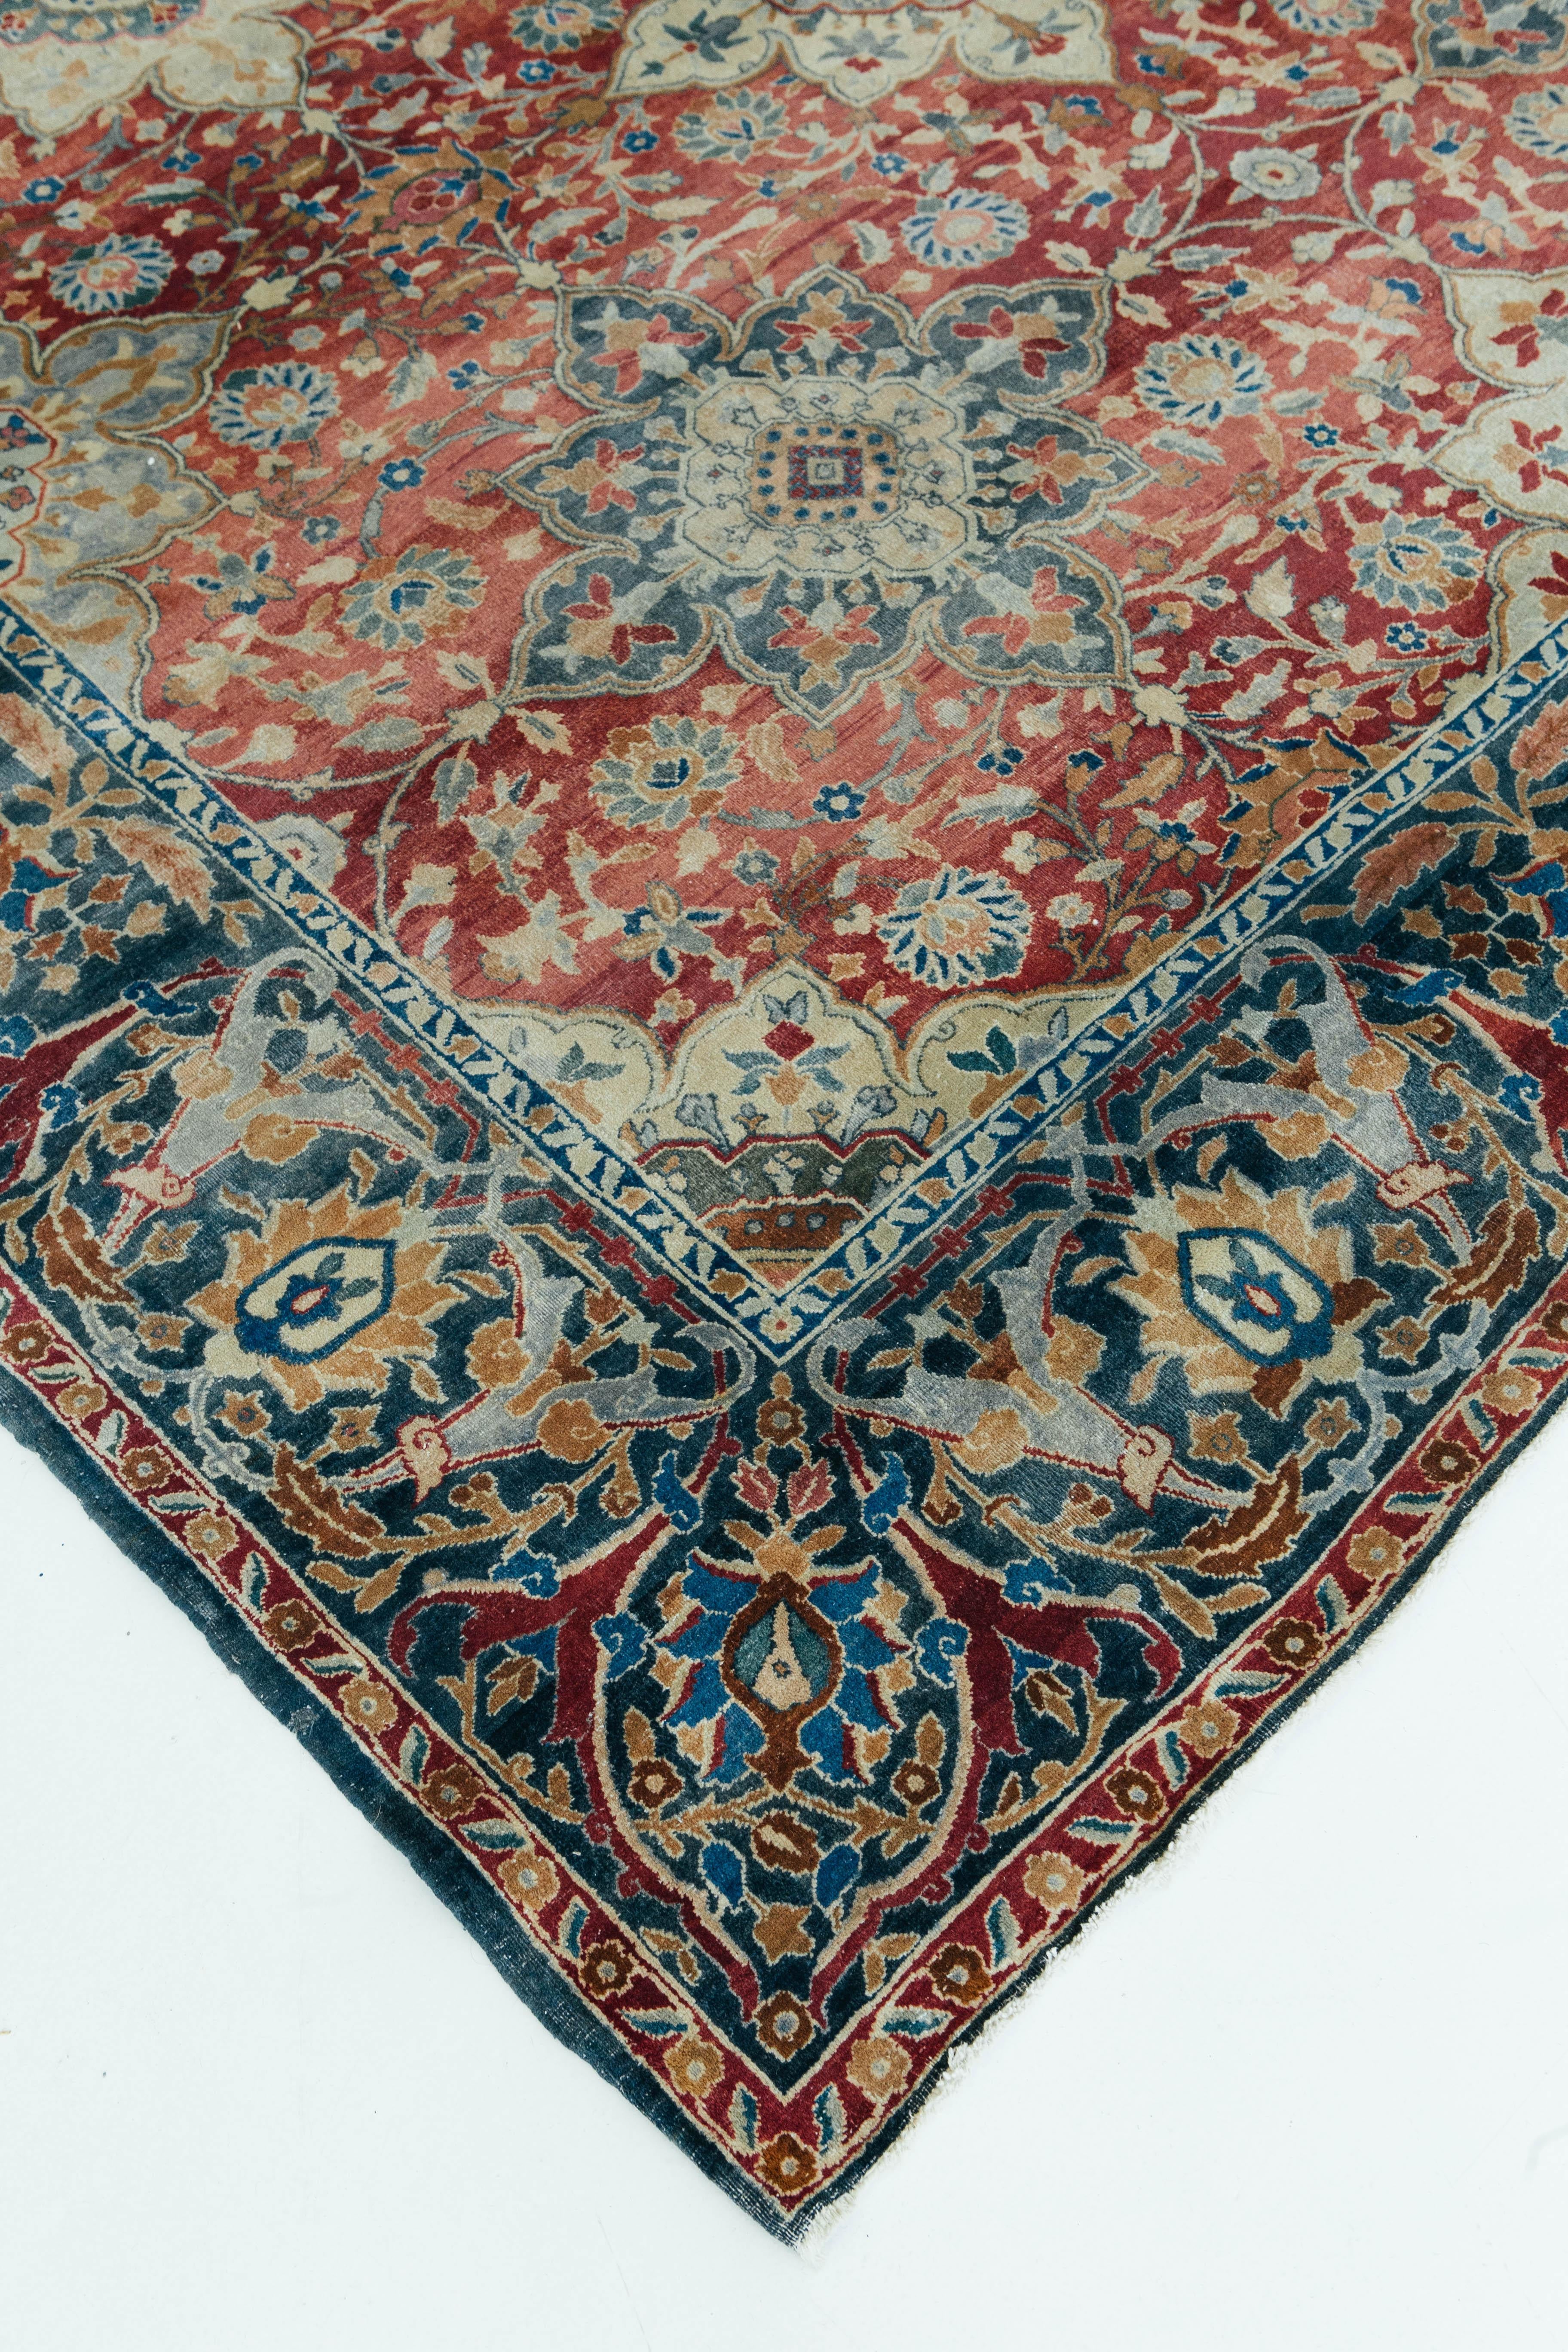 Ein antiker indischer Agra-Teppich aus der Region Uttar Pradesh in Nordindien. Dieser schöne übergroße Teppich ist ein gut erhaltenes antikes Stück mit schönen roten, blauen und elfenbeinfarbenen Tönen. Zusammen ergeben diese Farben wunderschöne,